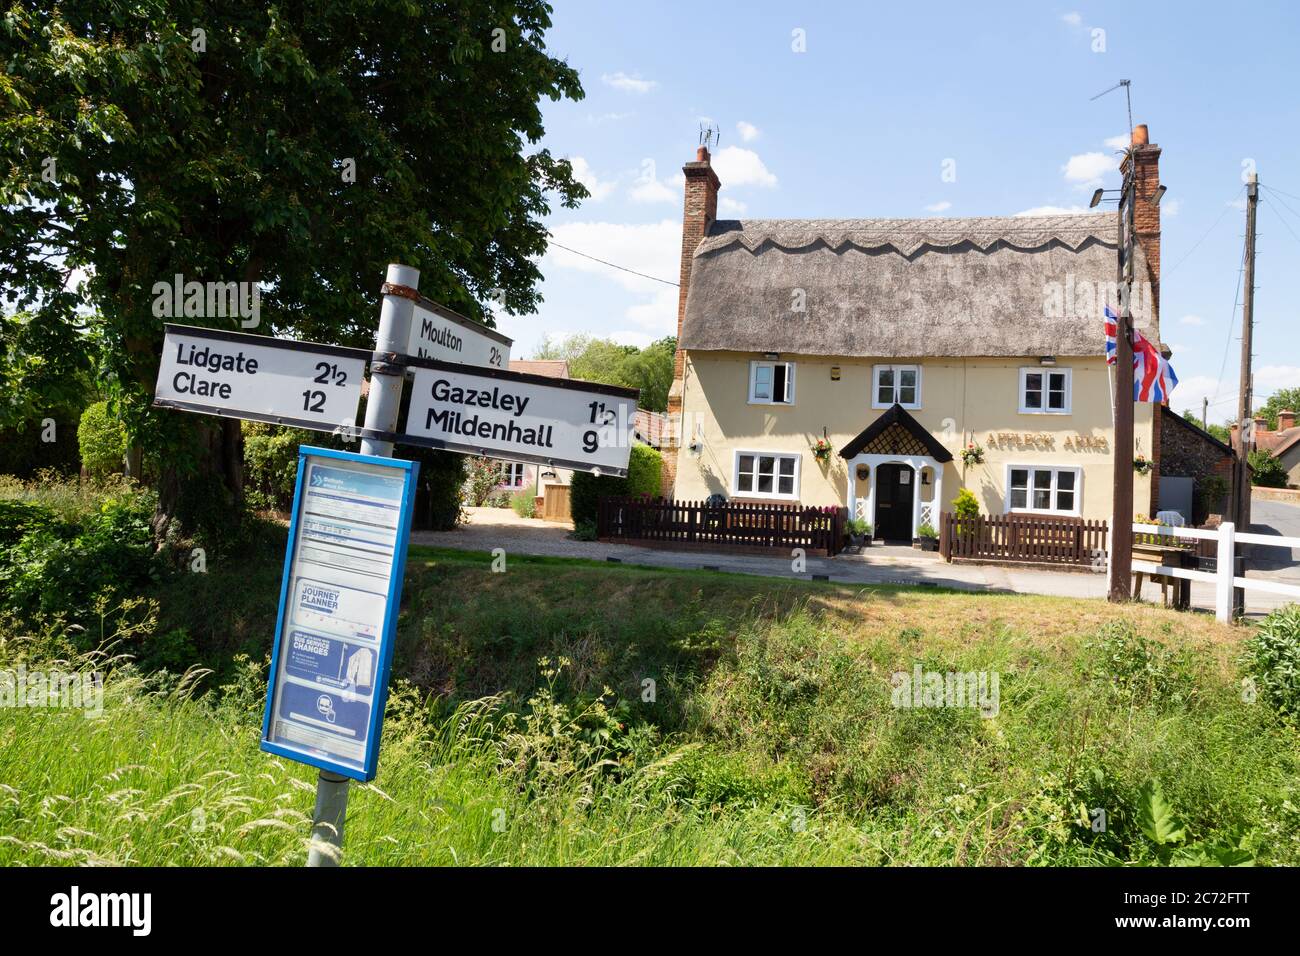 Suffolk Pub; The Affleck Arms, ein englisches Dorf Country Pub im Suffolk Dorf Dalham an einem sonnigen Tag im Sommer; Dalham Suffolk UK Stockfoto